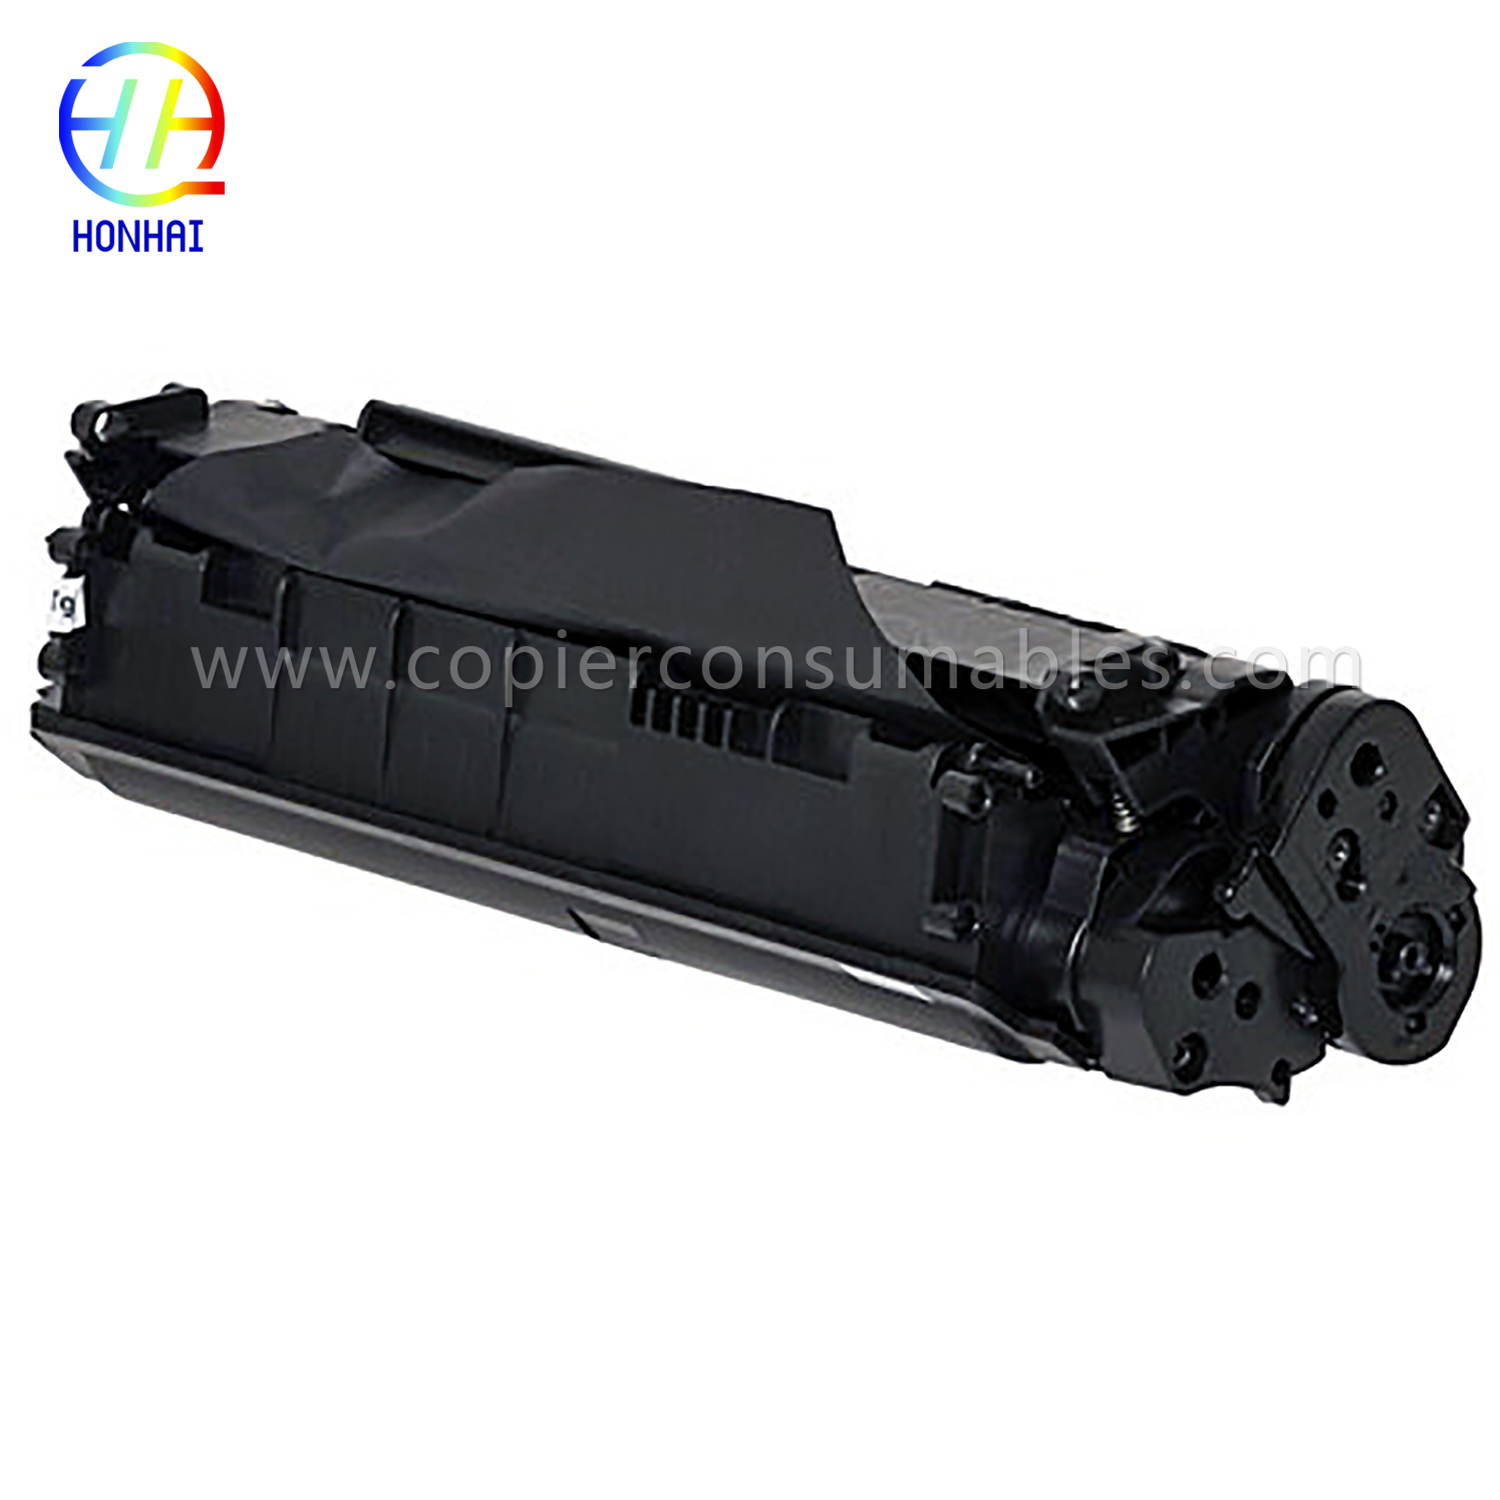 Black Toner Cartridge HP LaserJet 1010 1012 1015 1018 1020 3015 3020 3030 3050 3052 3055 M1005MFP M1319f (Q2612A) 13.9x5.2x6.